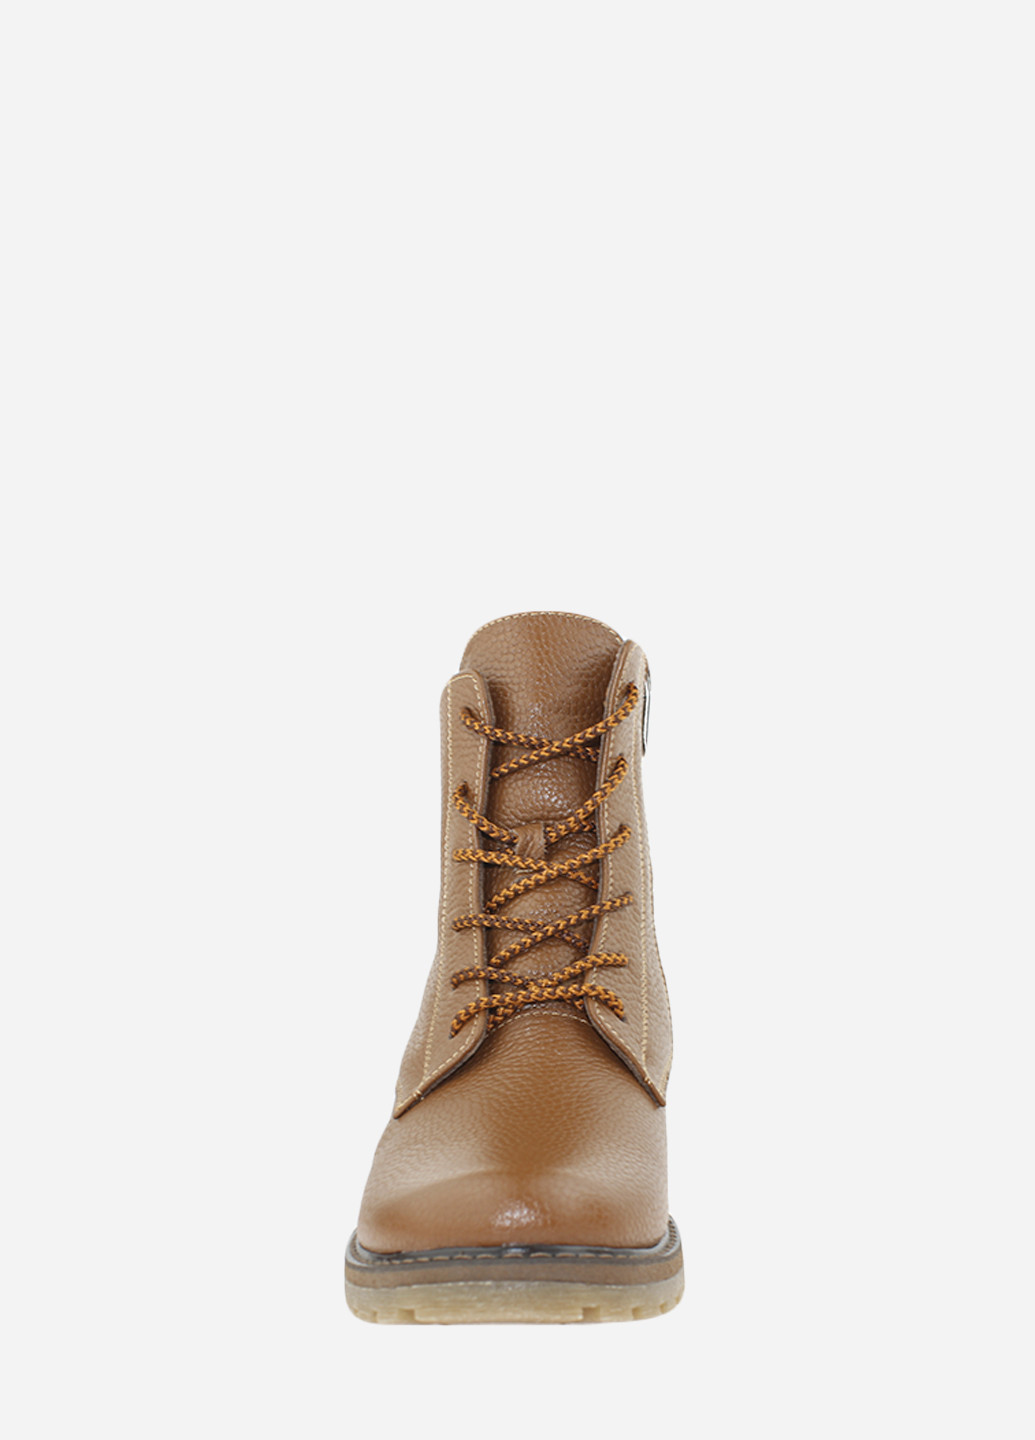 Зимние ботинки rhit404-2-22 коричневый Hitcher